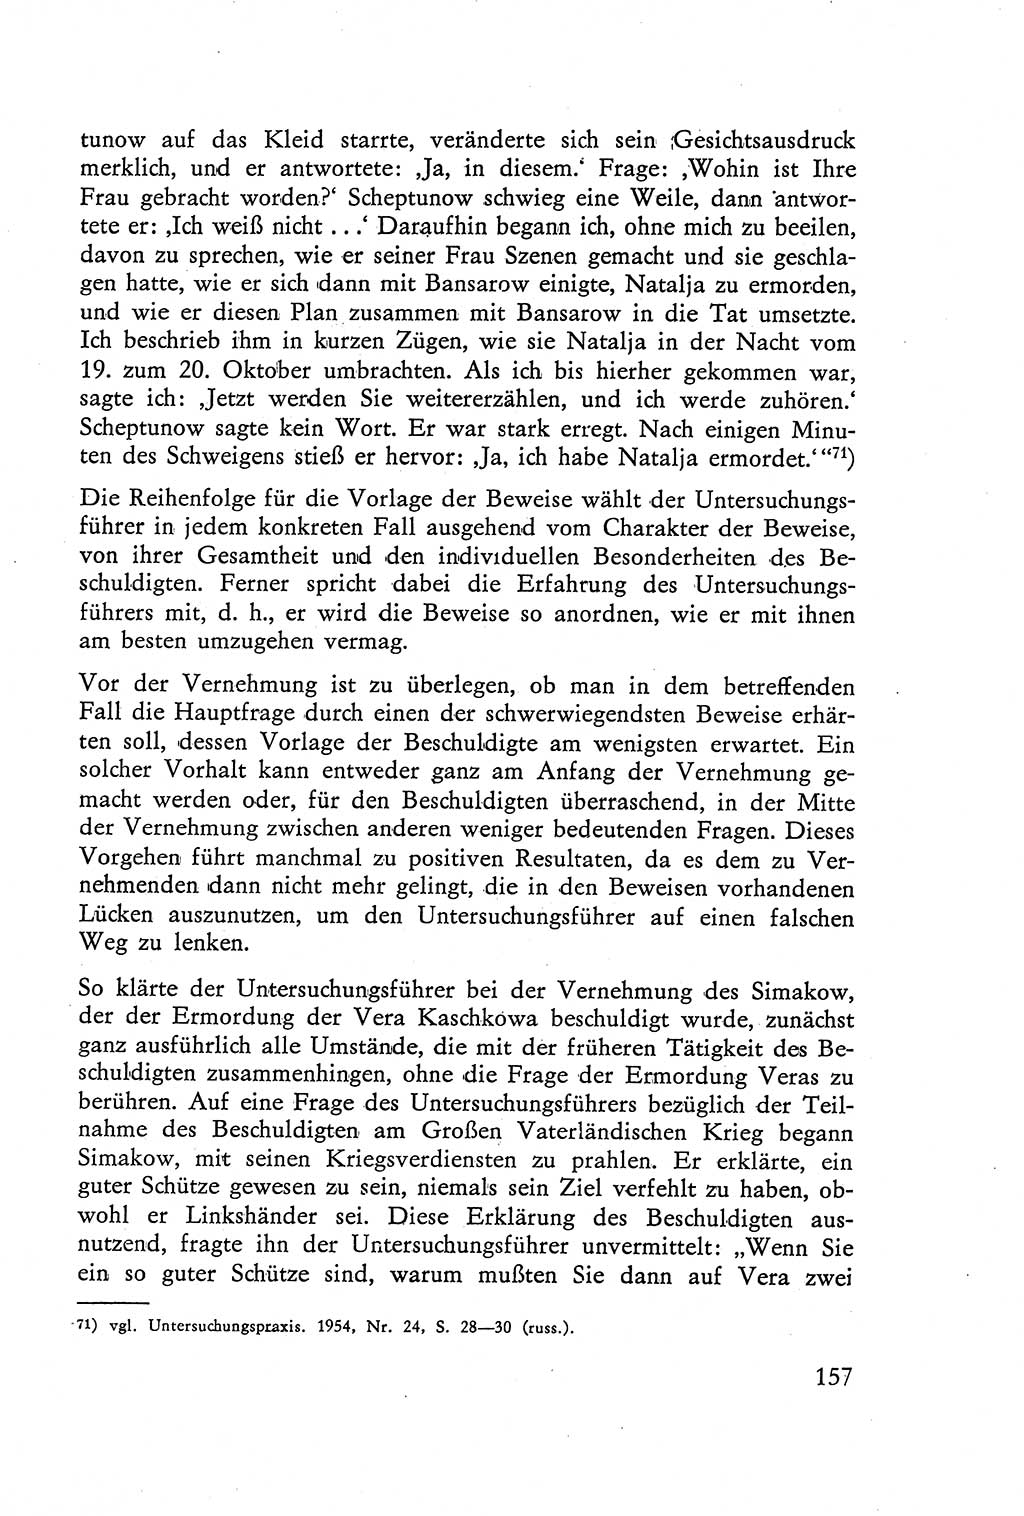 Die Vernehmung [Deutsche Demokratische Republik (DDR)] 1960, Seite 157 (Vern. DDR 1960, S. 157)